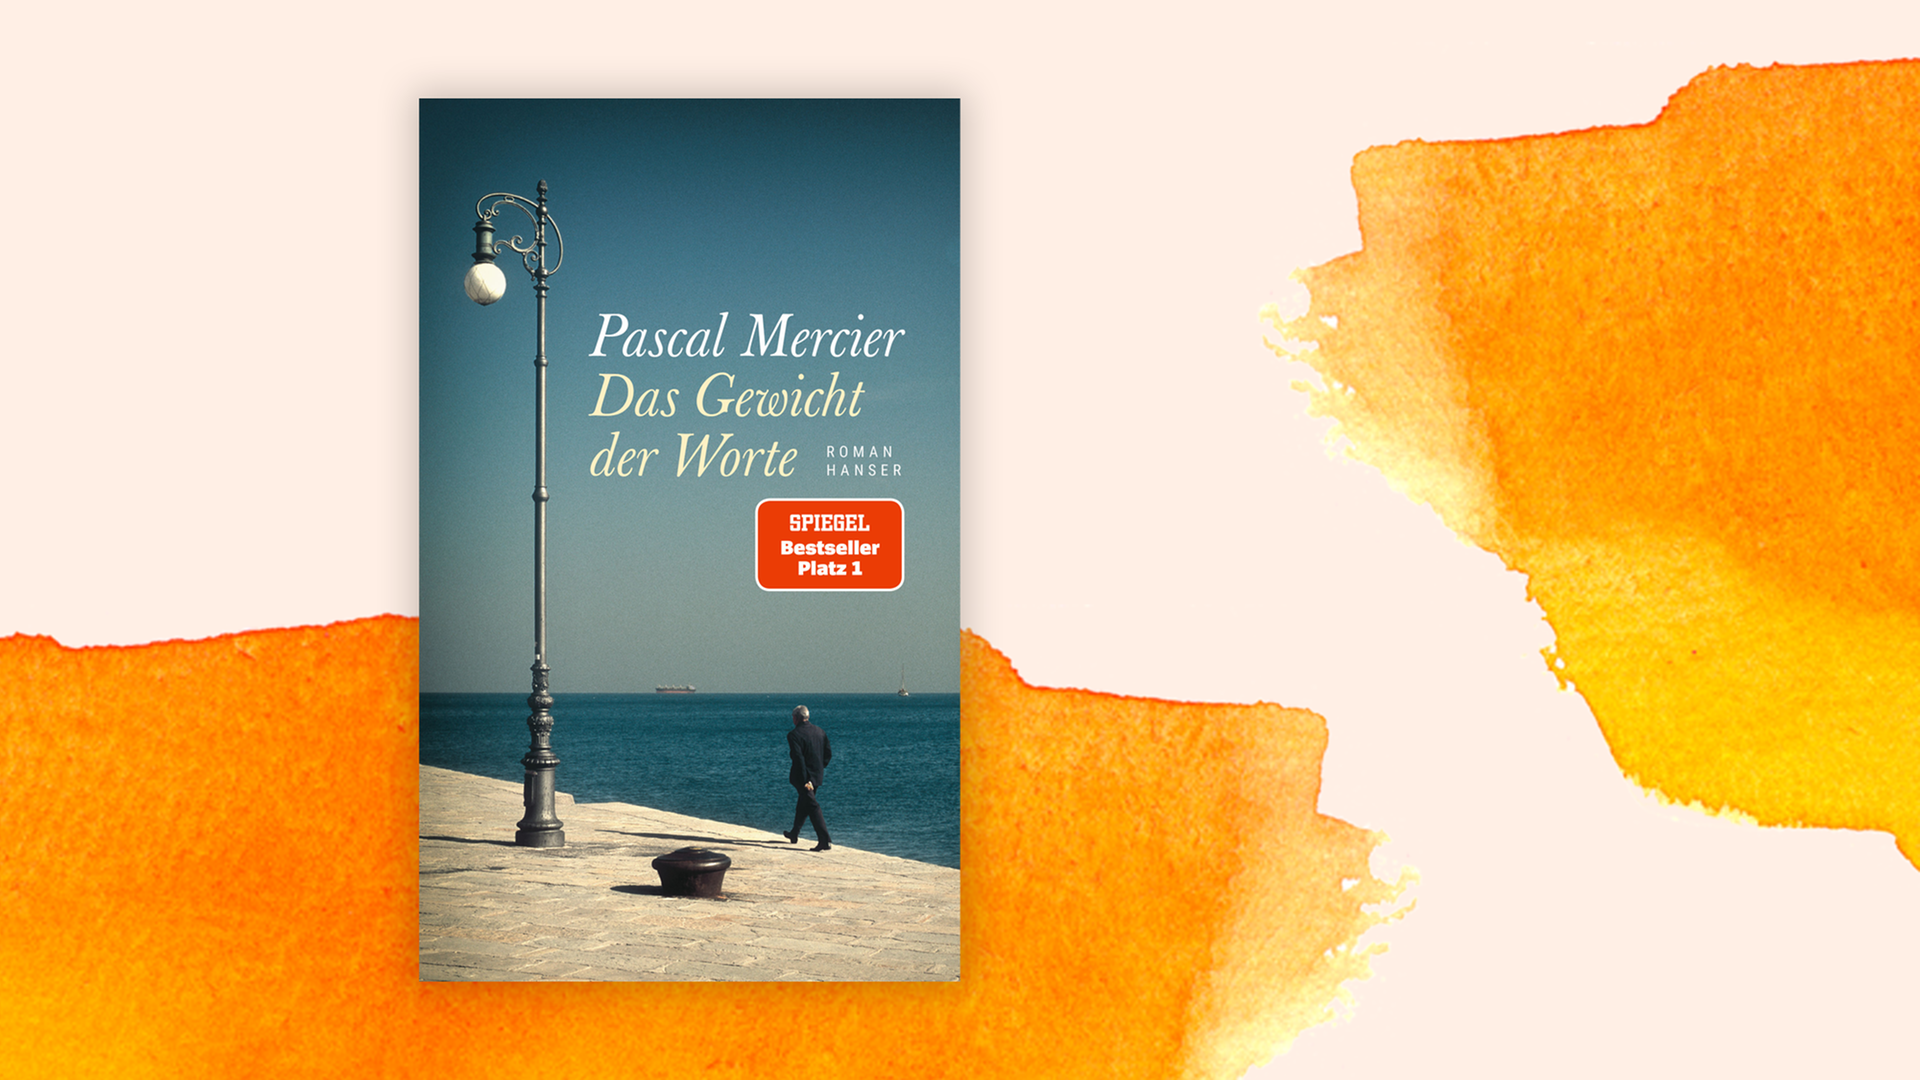 Zu sehen ist das Cover "Das Gewicht der Worte" von Pascal Mercier.